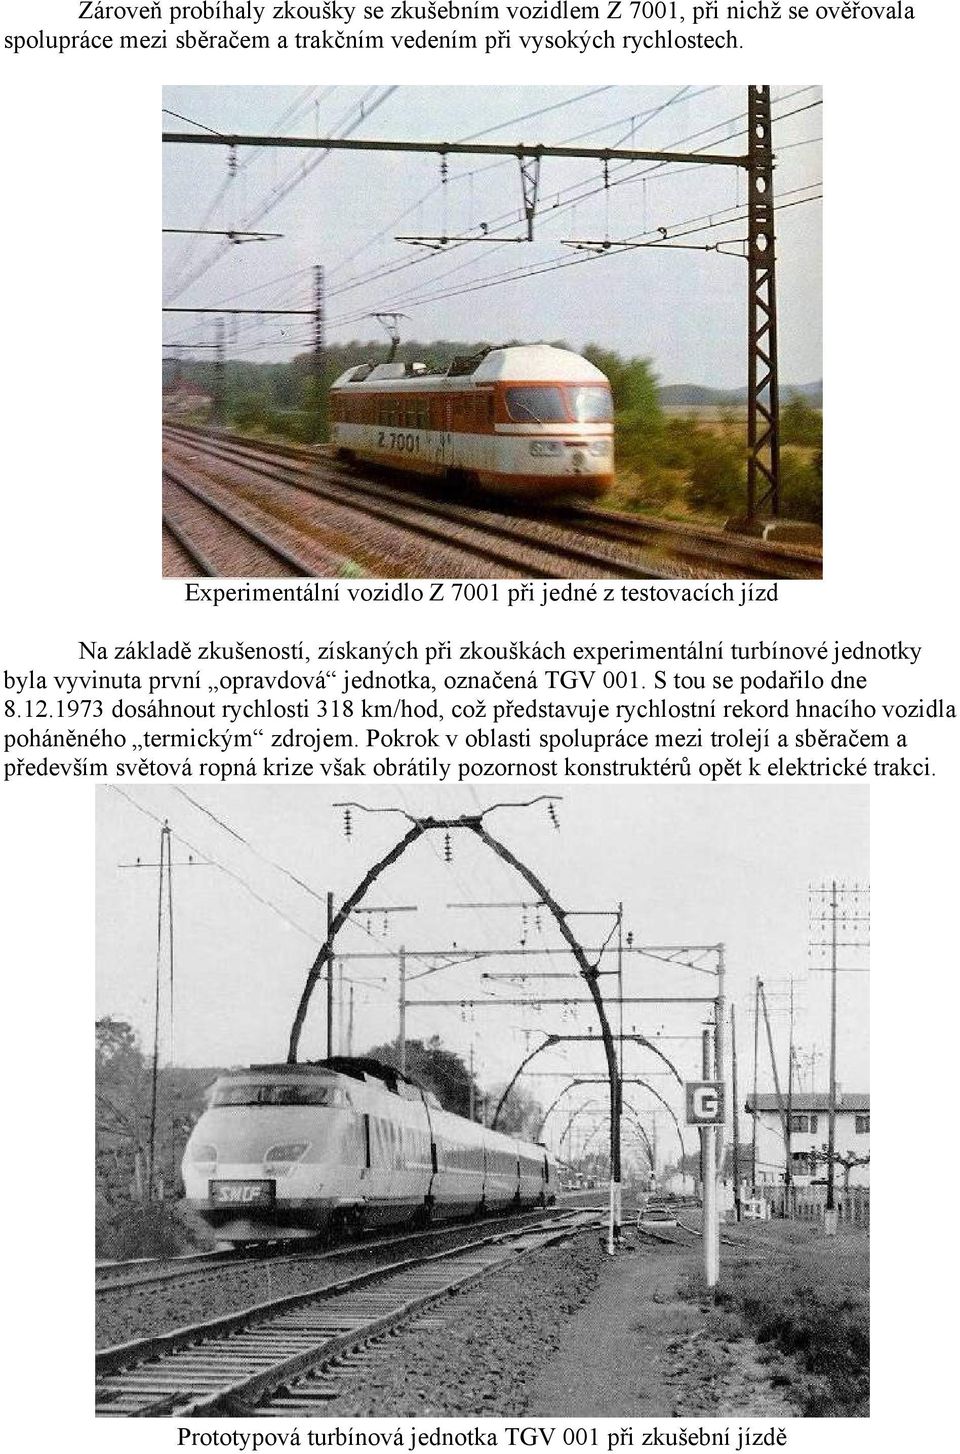 jednotka, označená TGV 001. S tou se podařilo dne 8.12.1973 dosáhnout rychlosti 318 km/hod, což představuje rychlostní rekord hnacího vozidla poháněného termickým zdrojem.